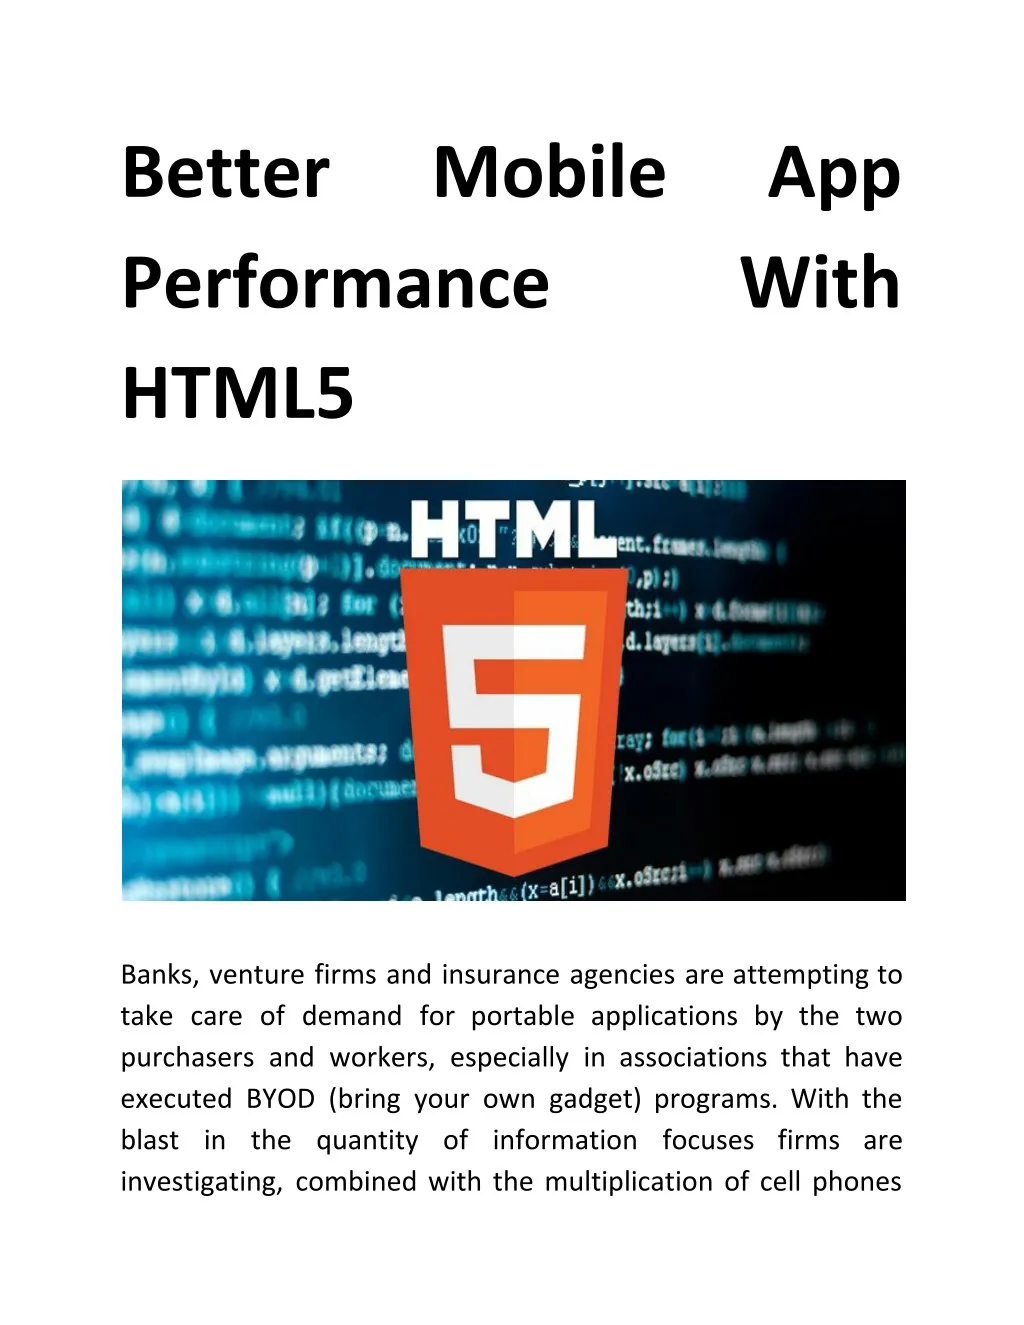 better performance html5